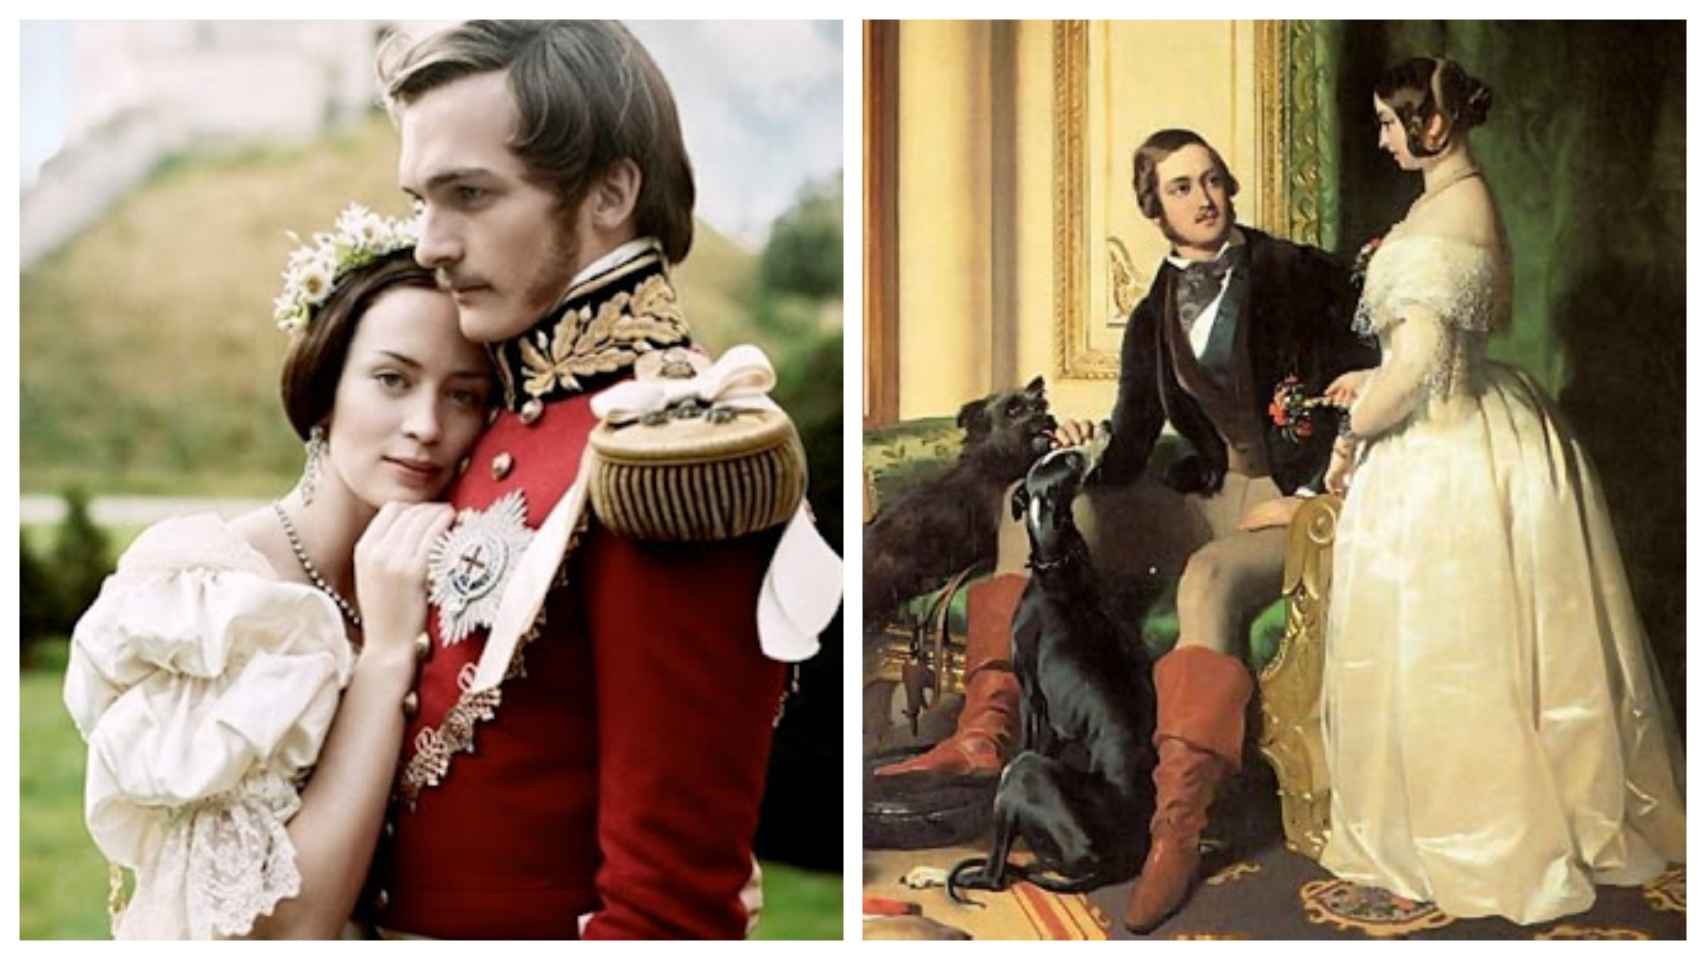 La reina Victoria y su marido,  el príncipe Alberto en un detalle del cuadro titulado 'El Castillo de Windsor en los tiempos modernos' (dcha.) y en la película 'La joven Victoria' (2009) interpretados por los actores Emily Blunt y Rupert Friend.